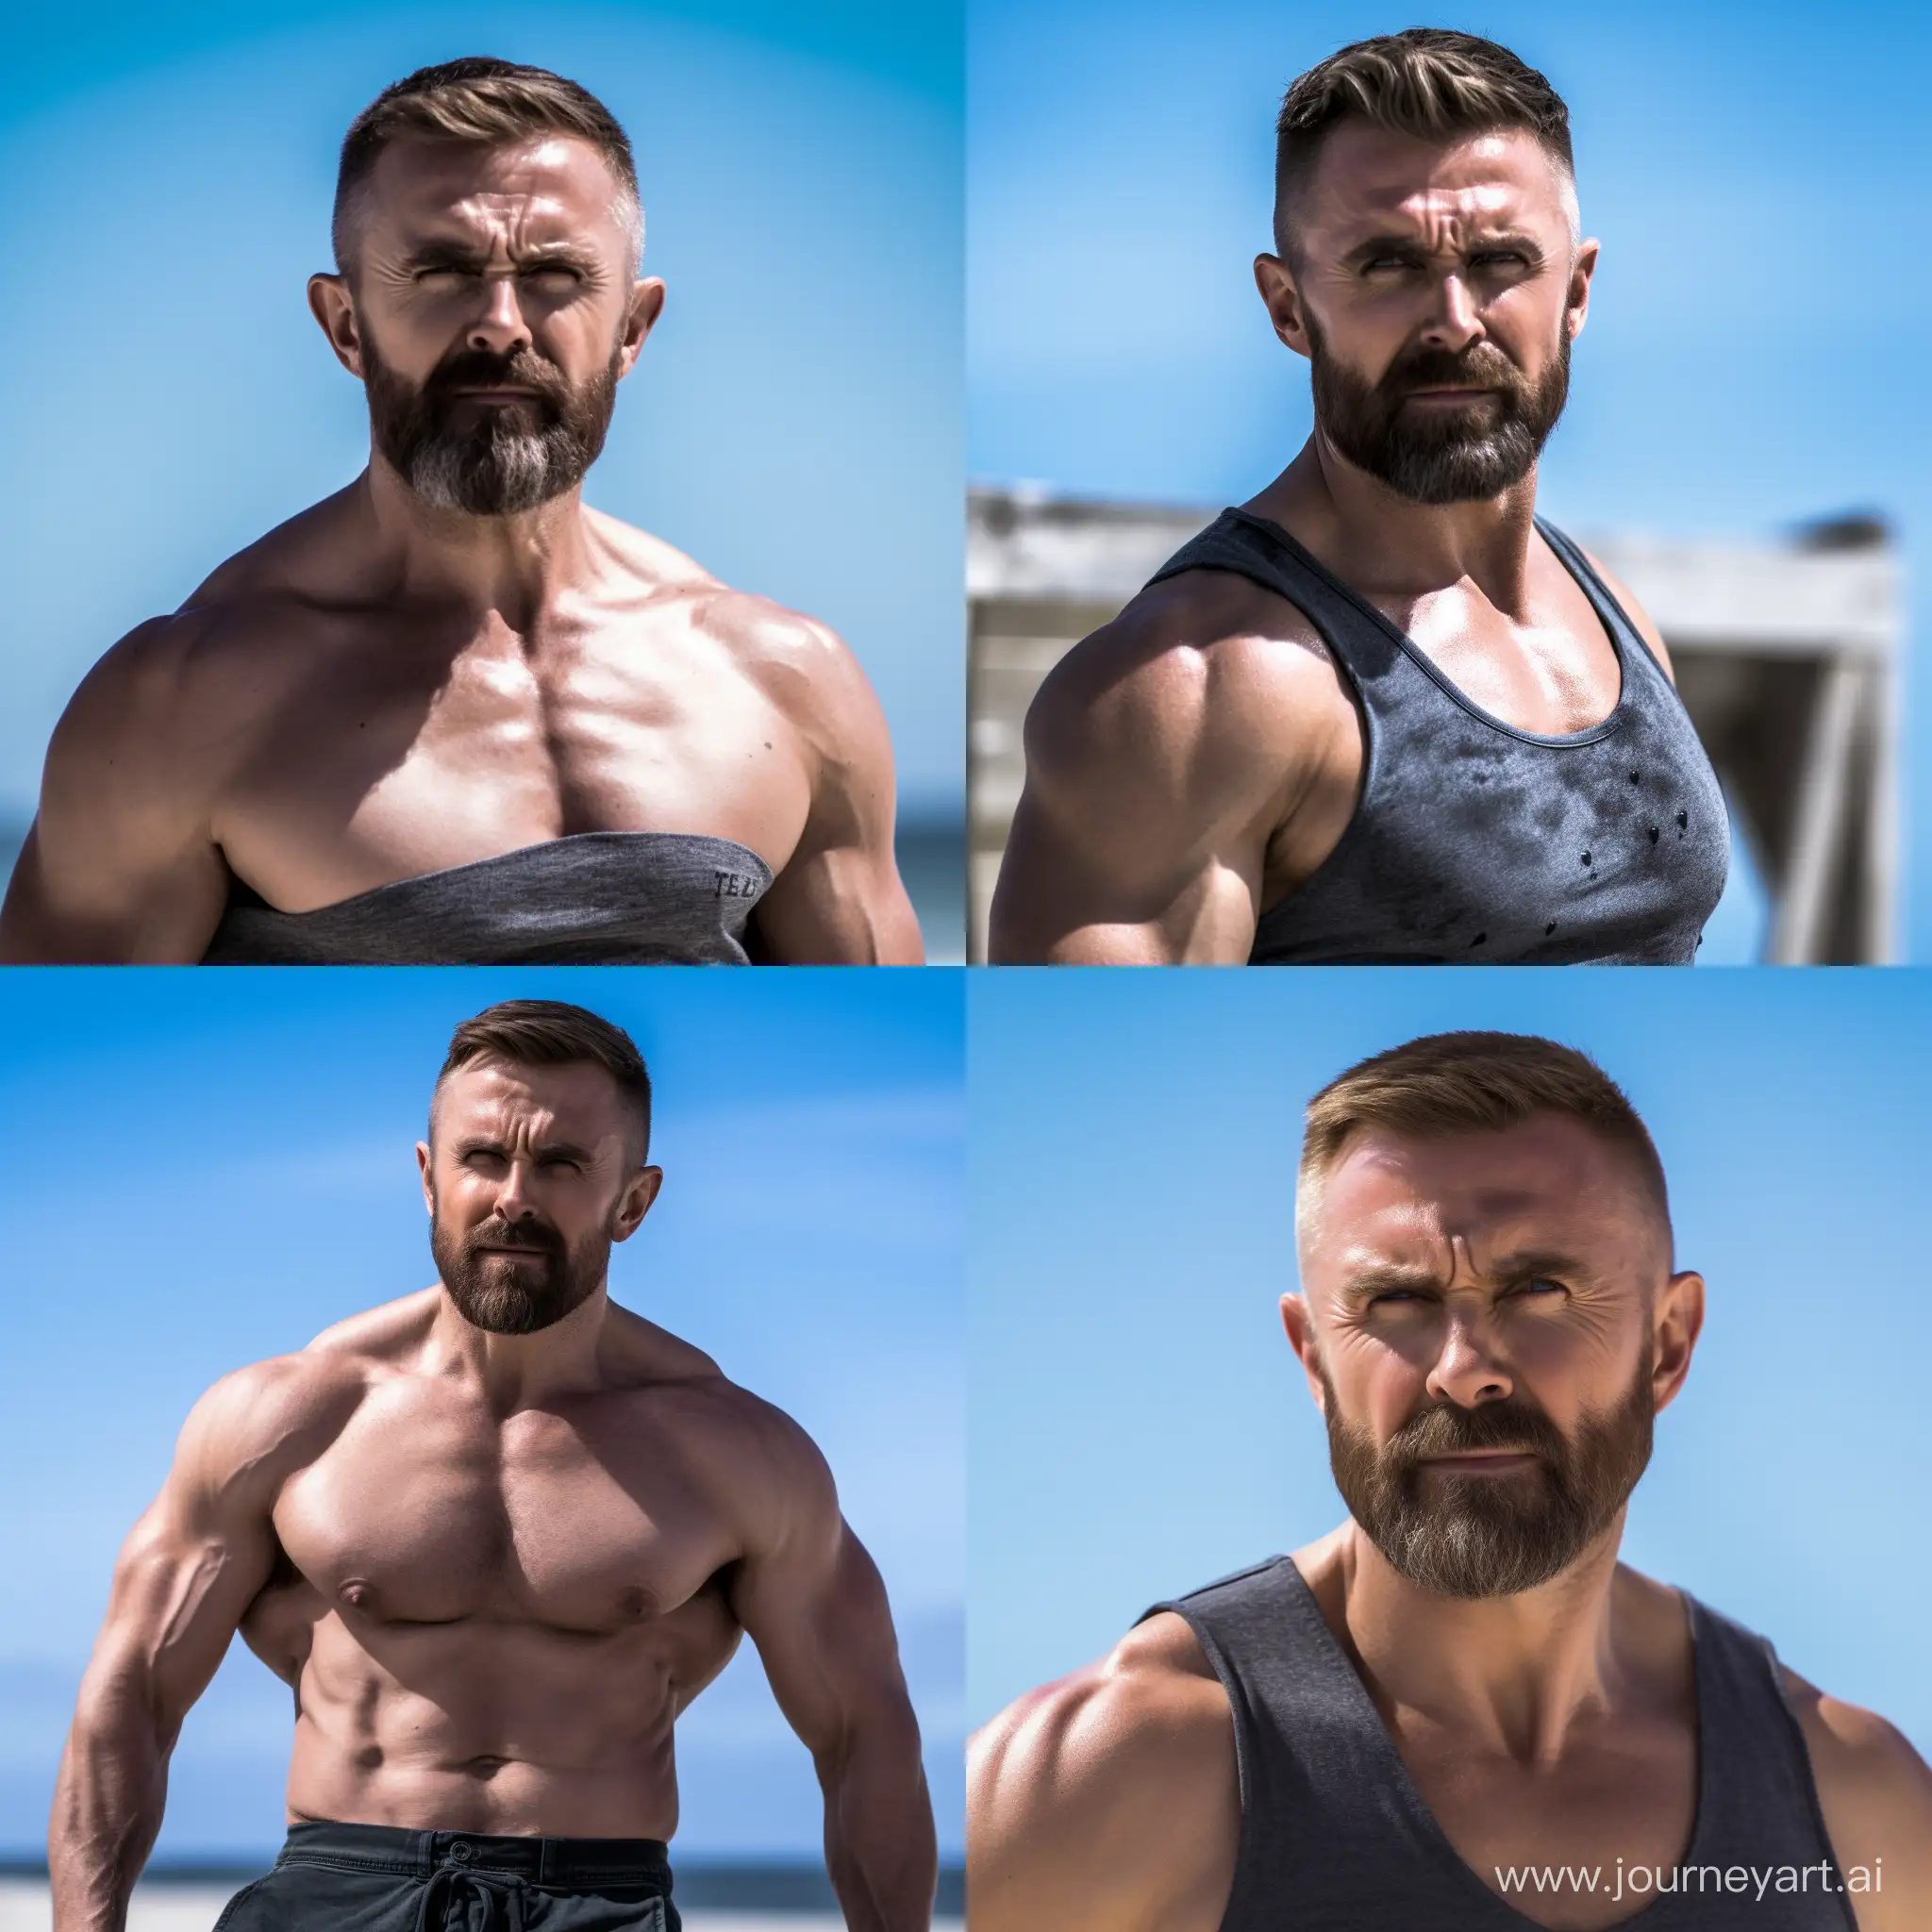 Gary-Barlow-Shirtless-Beach-Portrait-Muscular-Physique-and-Intense-Gaze